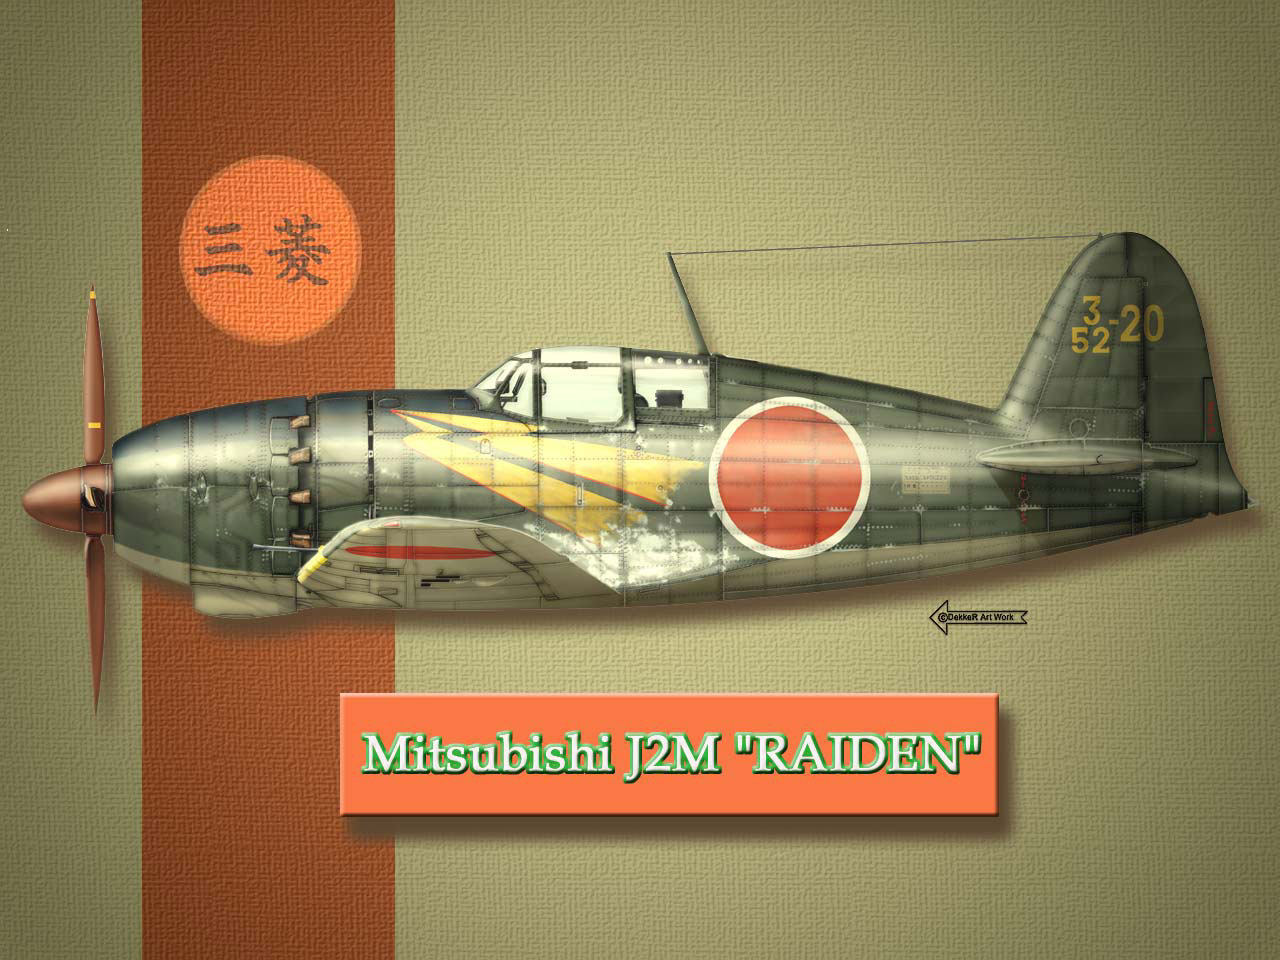 1516840 descargar imagen militar, mitsubishi j2m, segunda guerra mundial: fondos de pantalla y protectores de pantalla gratis